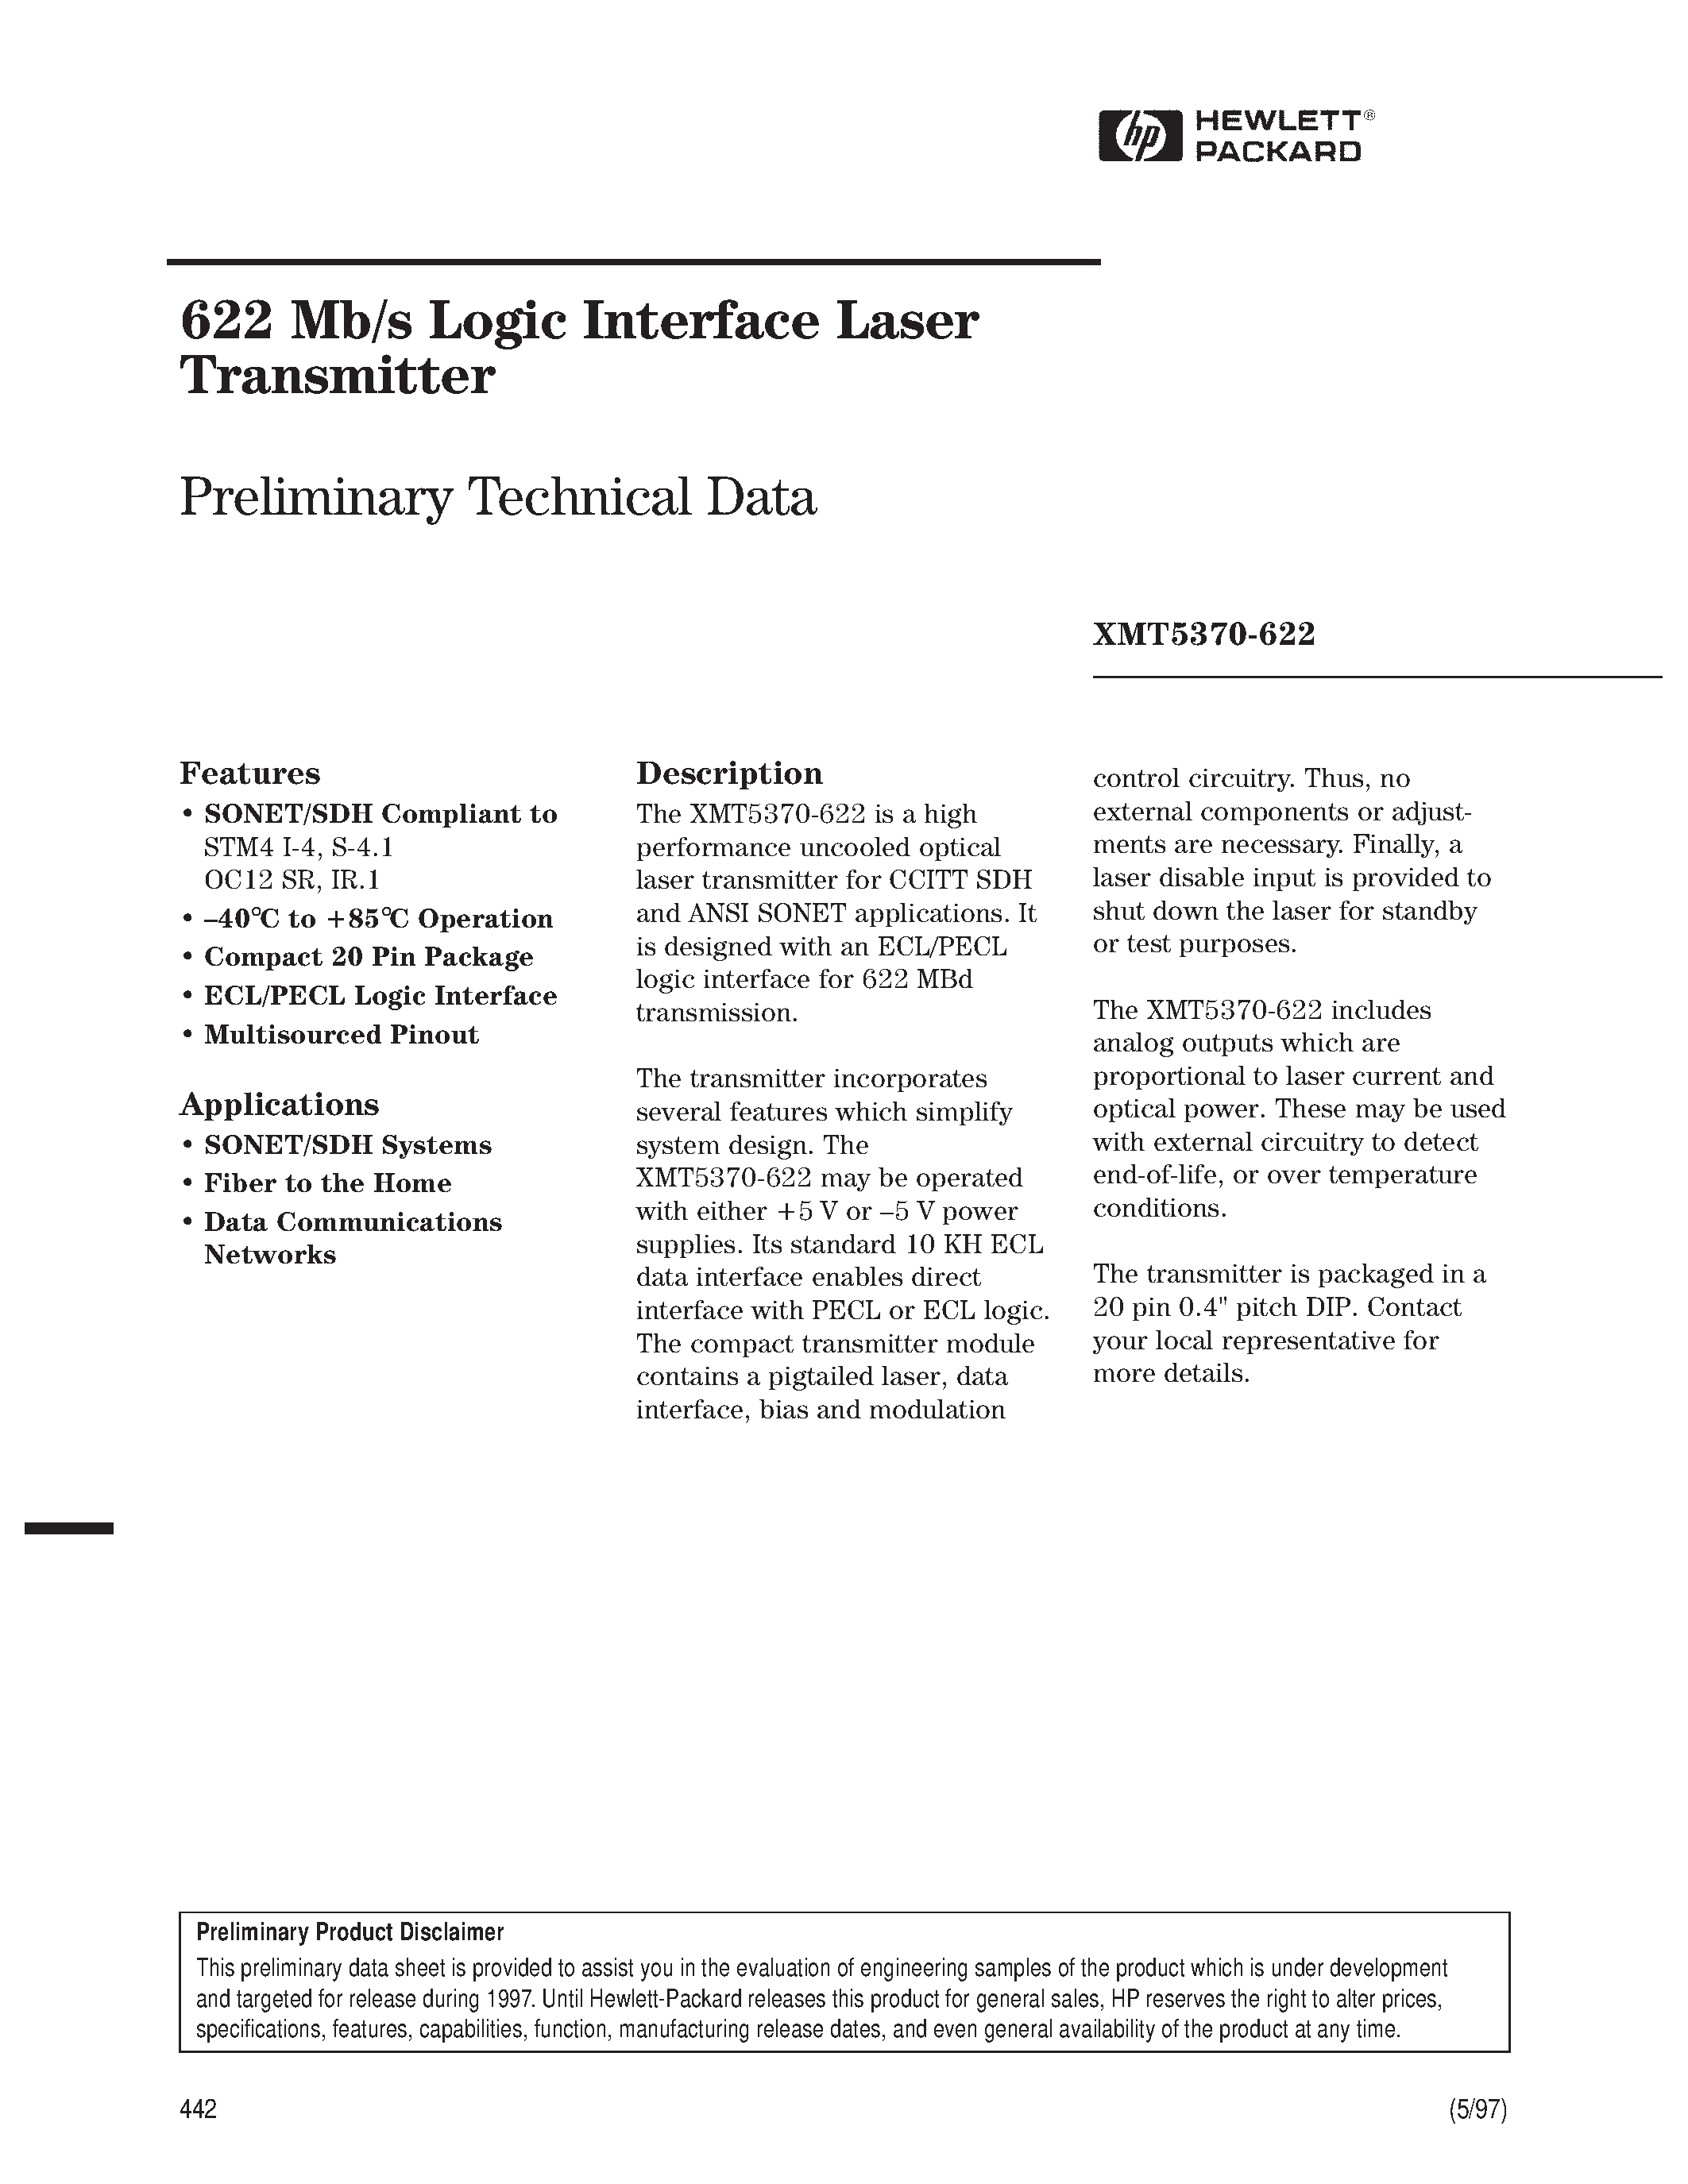 Datasheet XMT5370A-622-SC - 622 Mb/s Logic Interface Laser Transmitter page 1